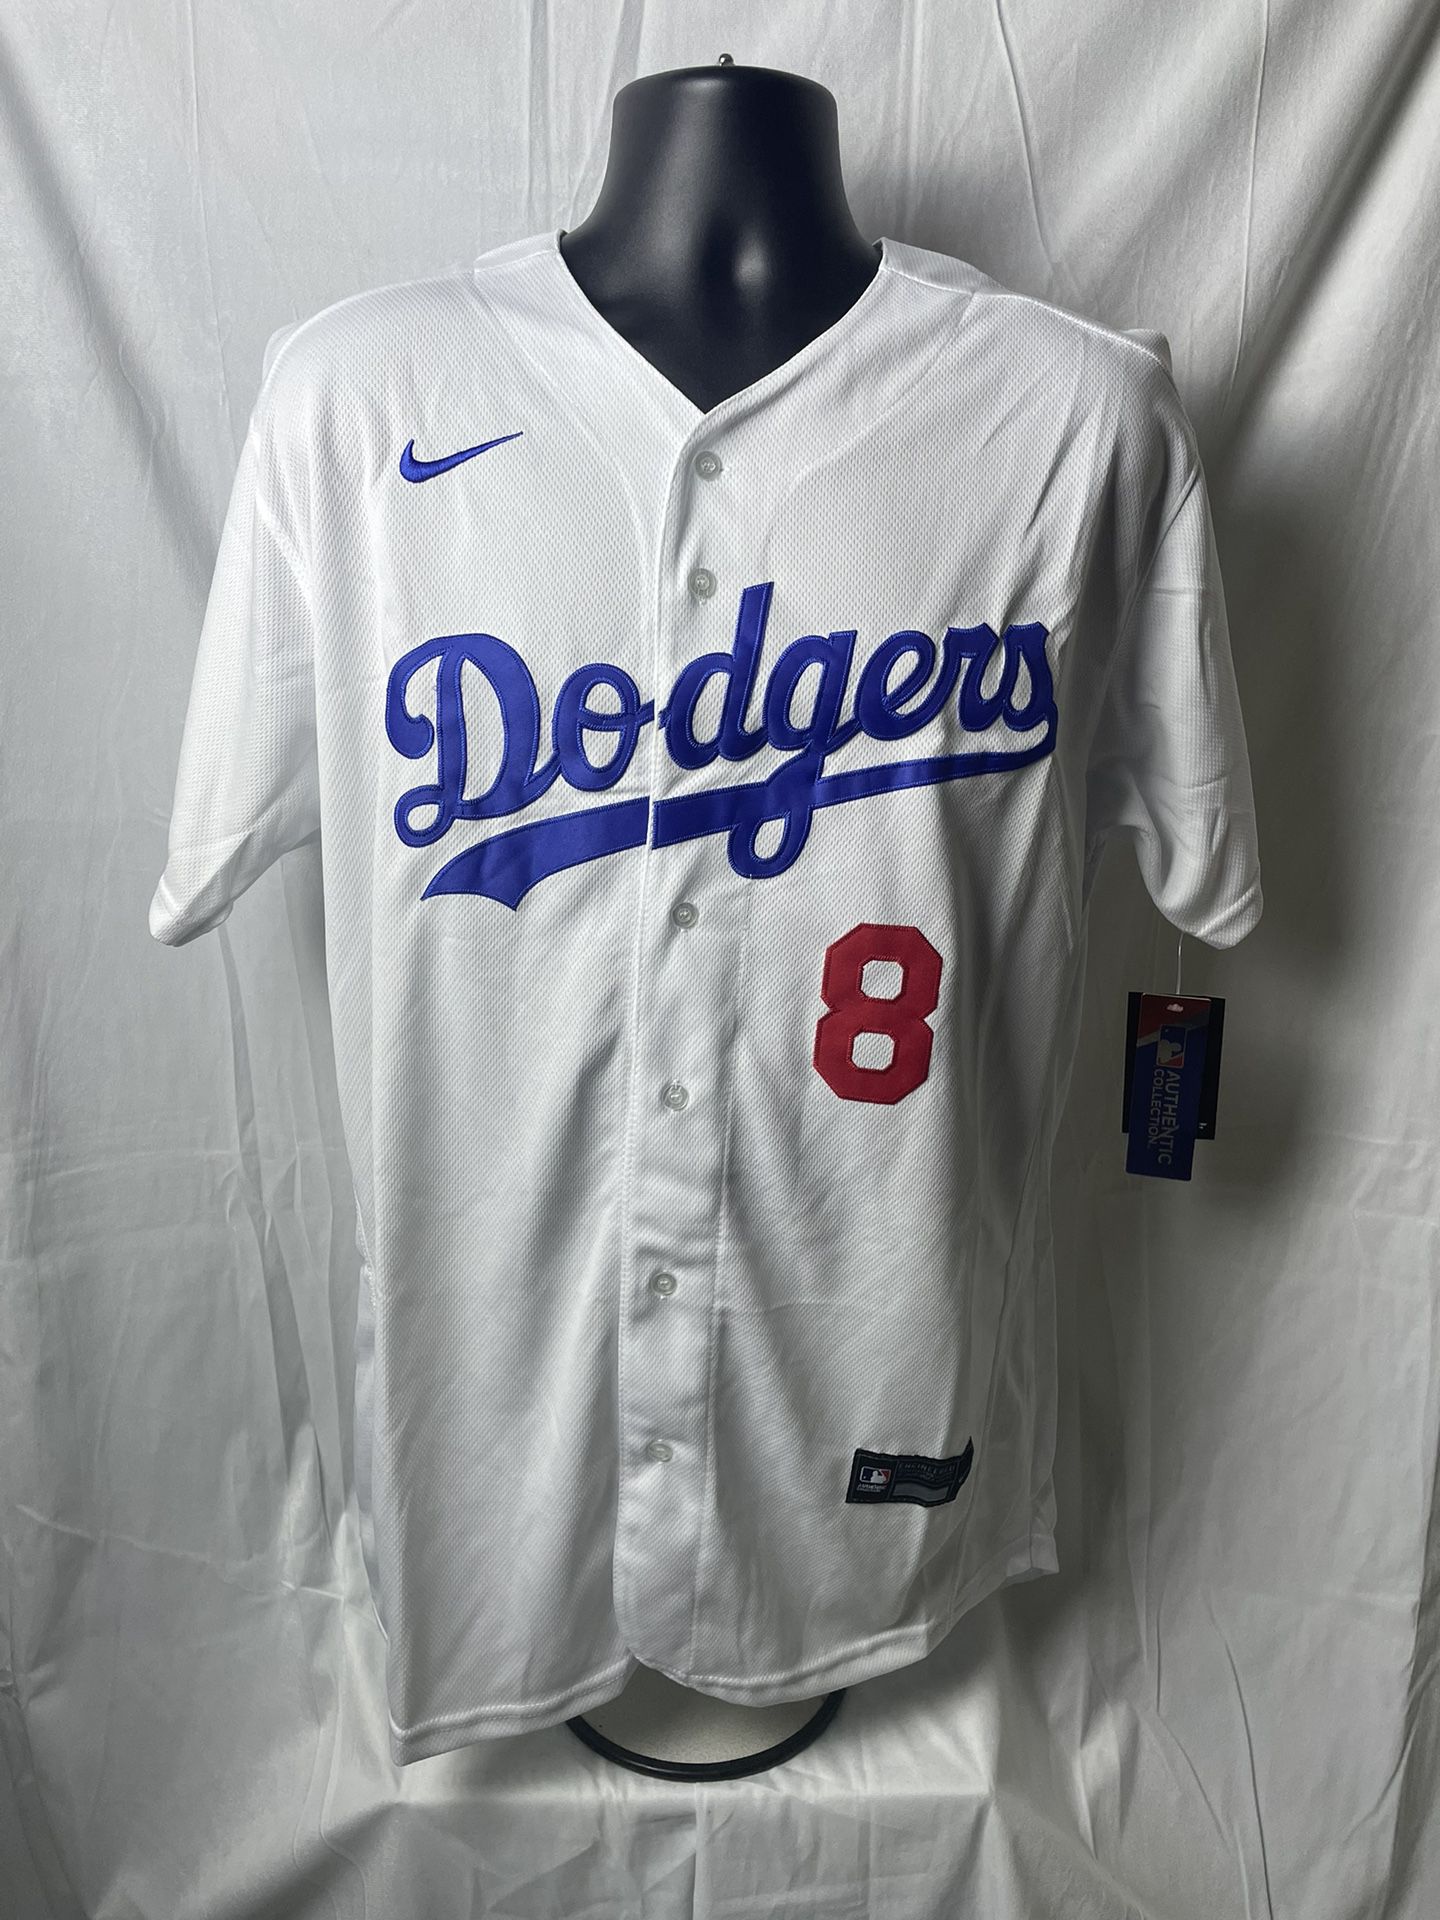 Kike Hernandez Dodgers Jersey for Sale in Irwindale, CA - OfferUp